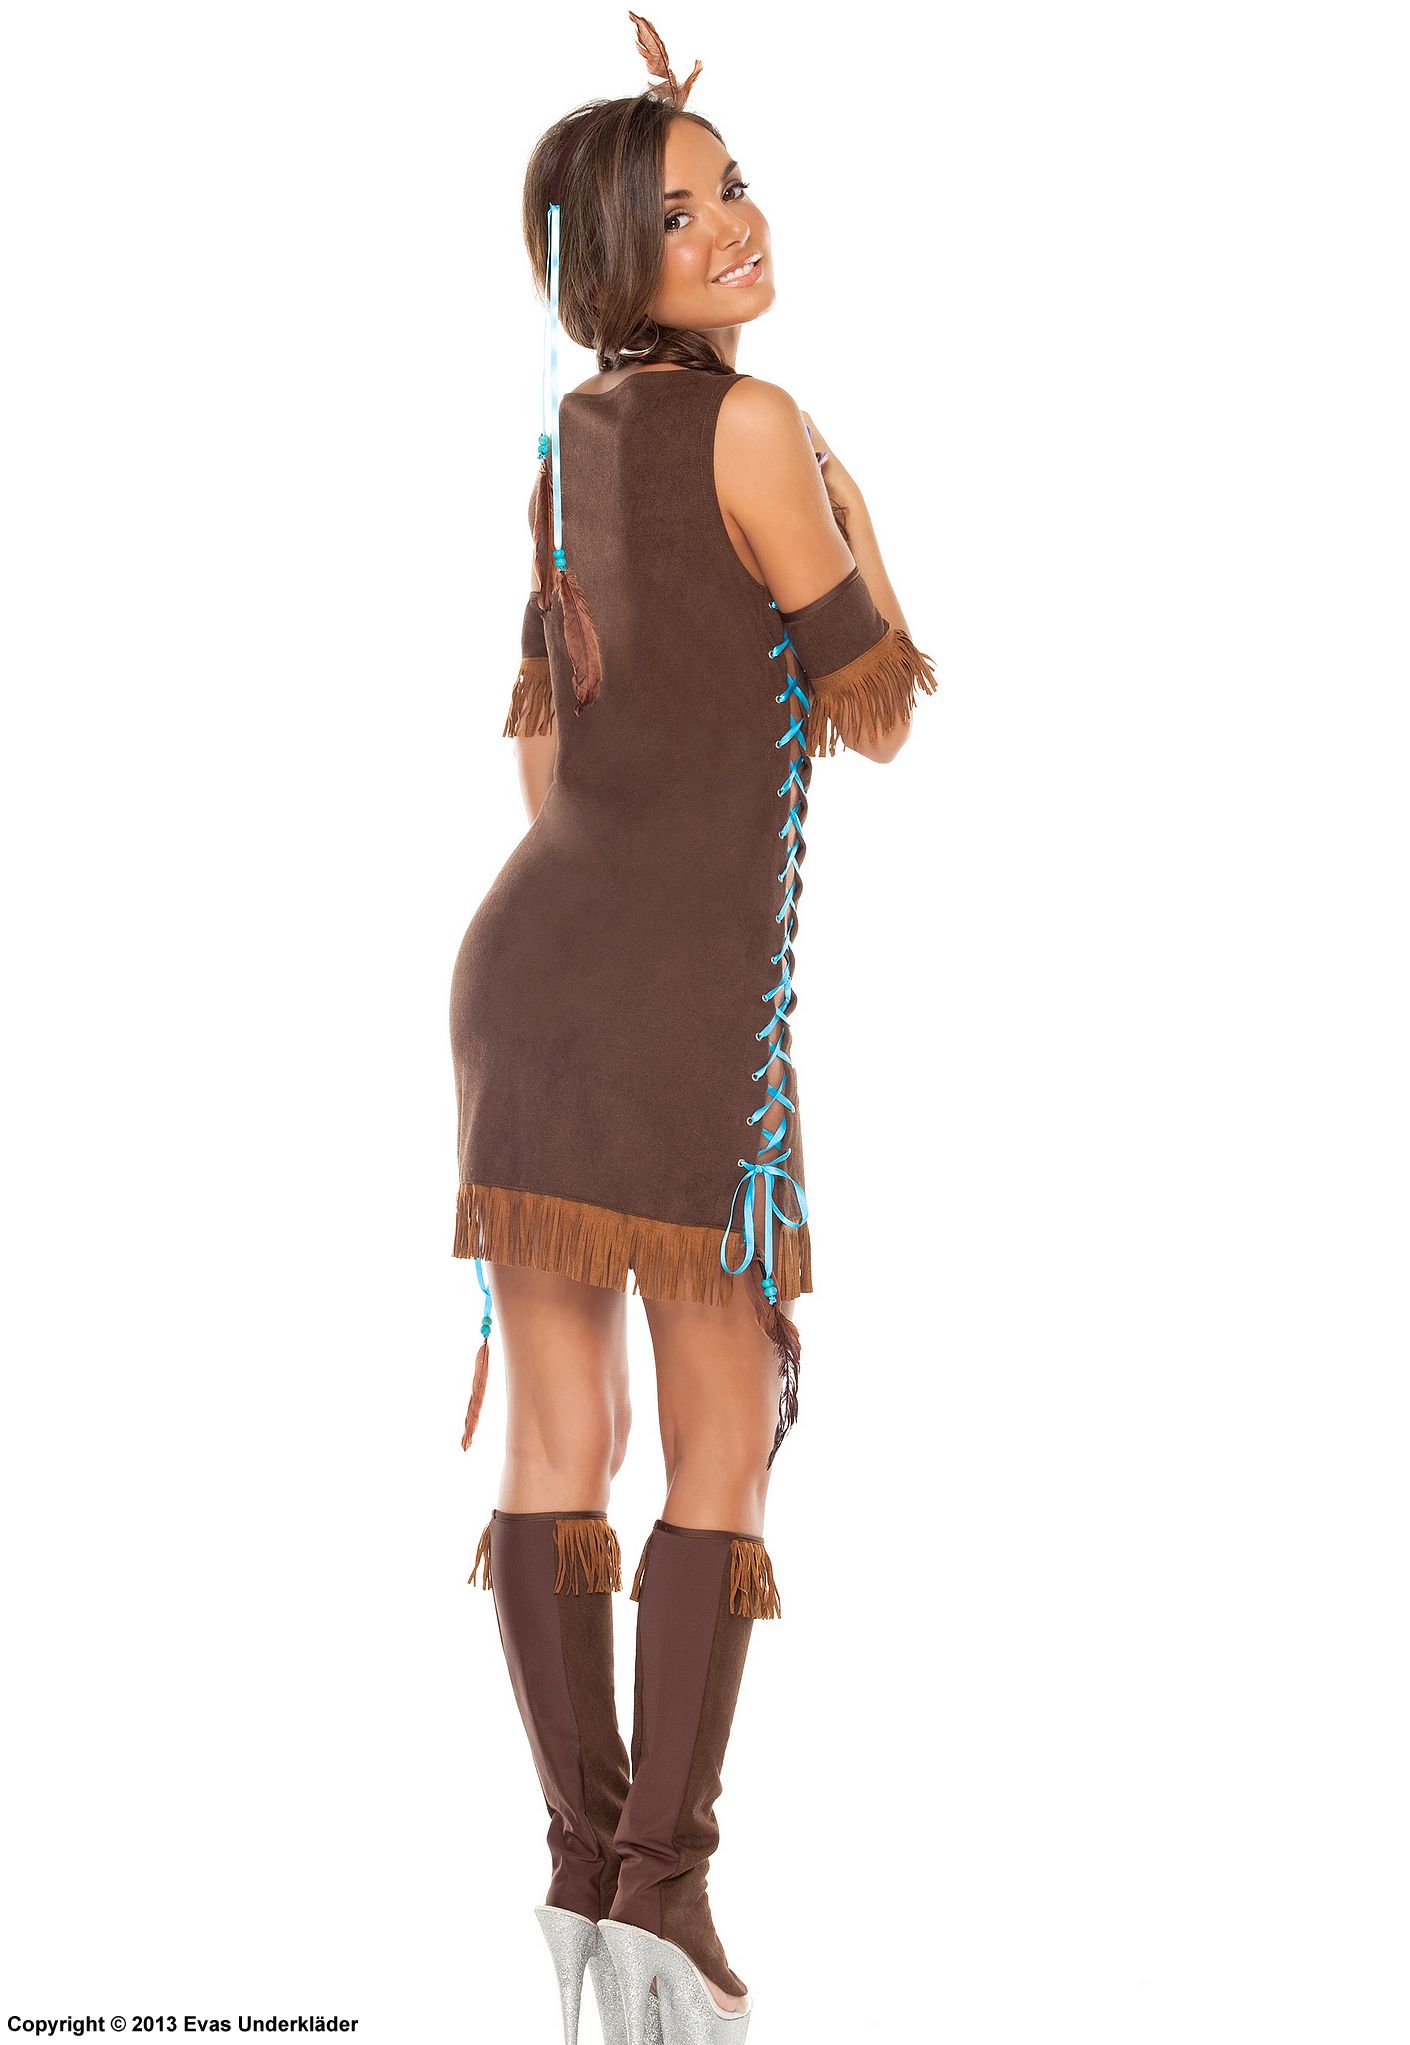 Pocahontas, maskeradklänning med fransar, snörning och pärlor